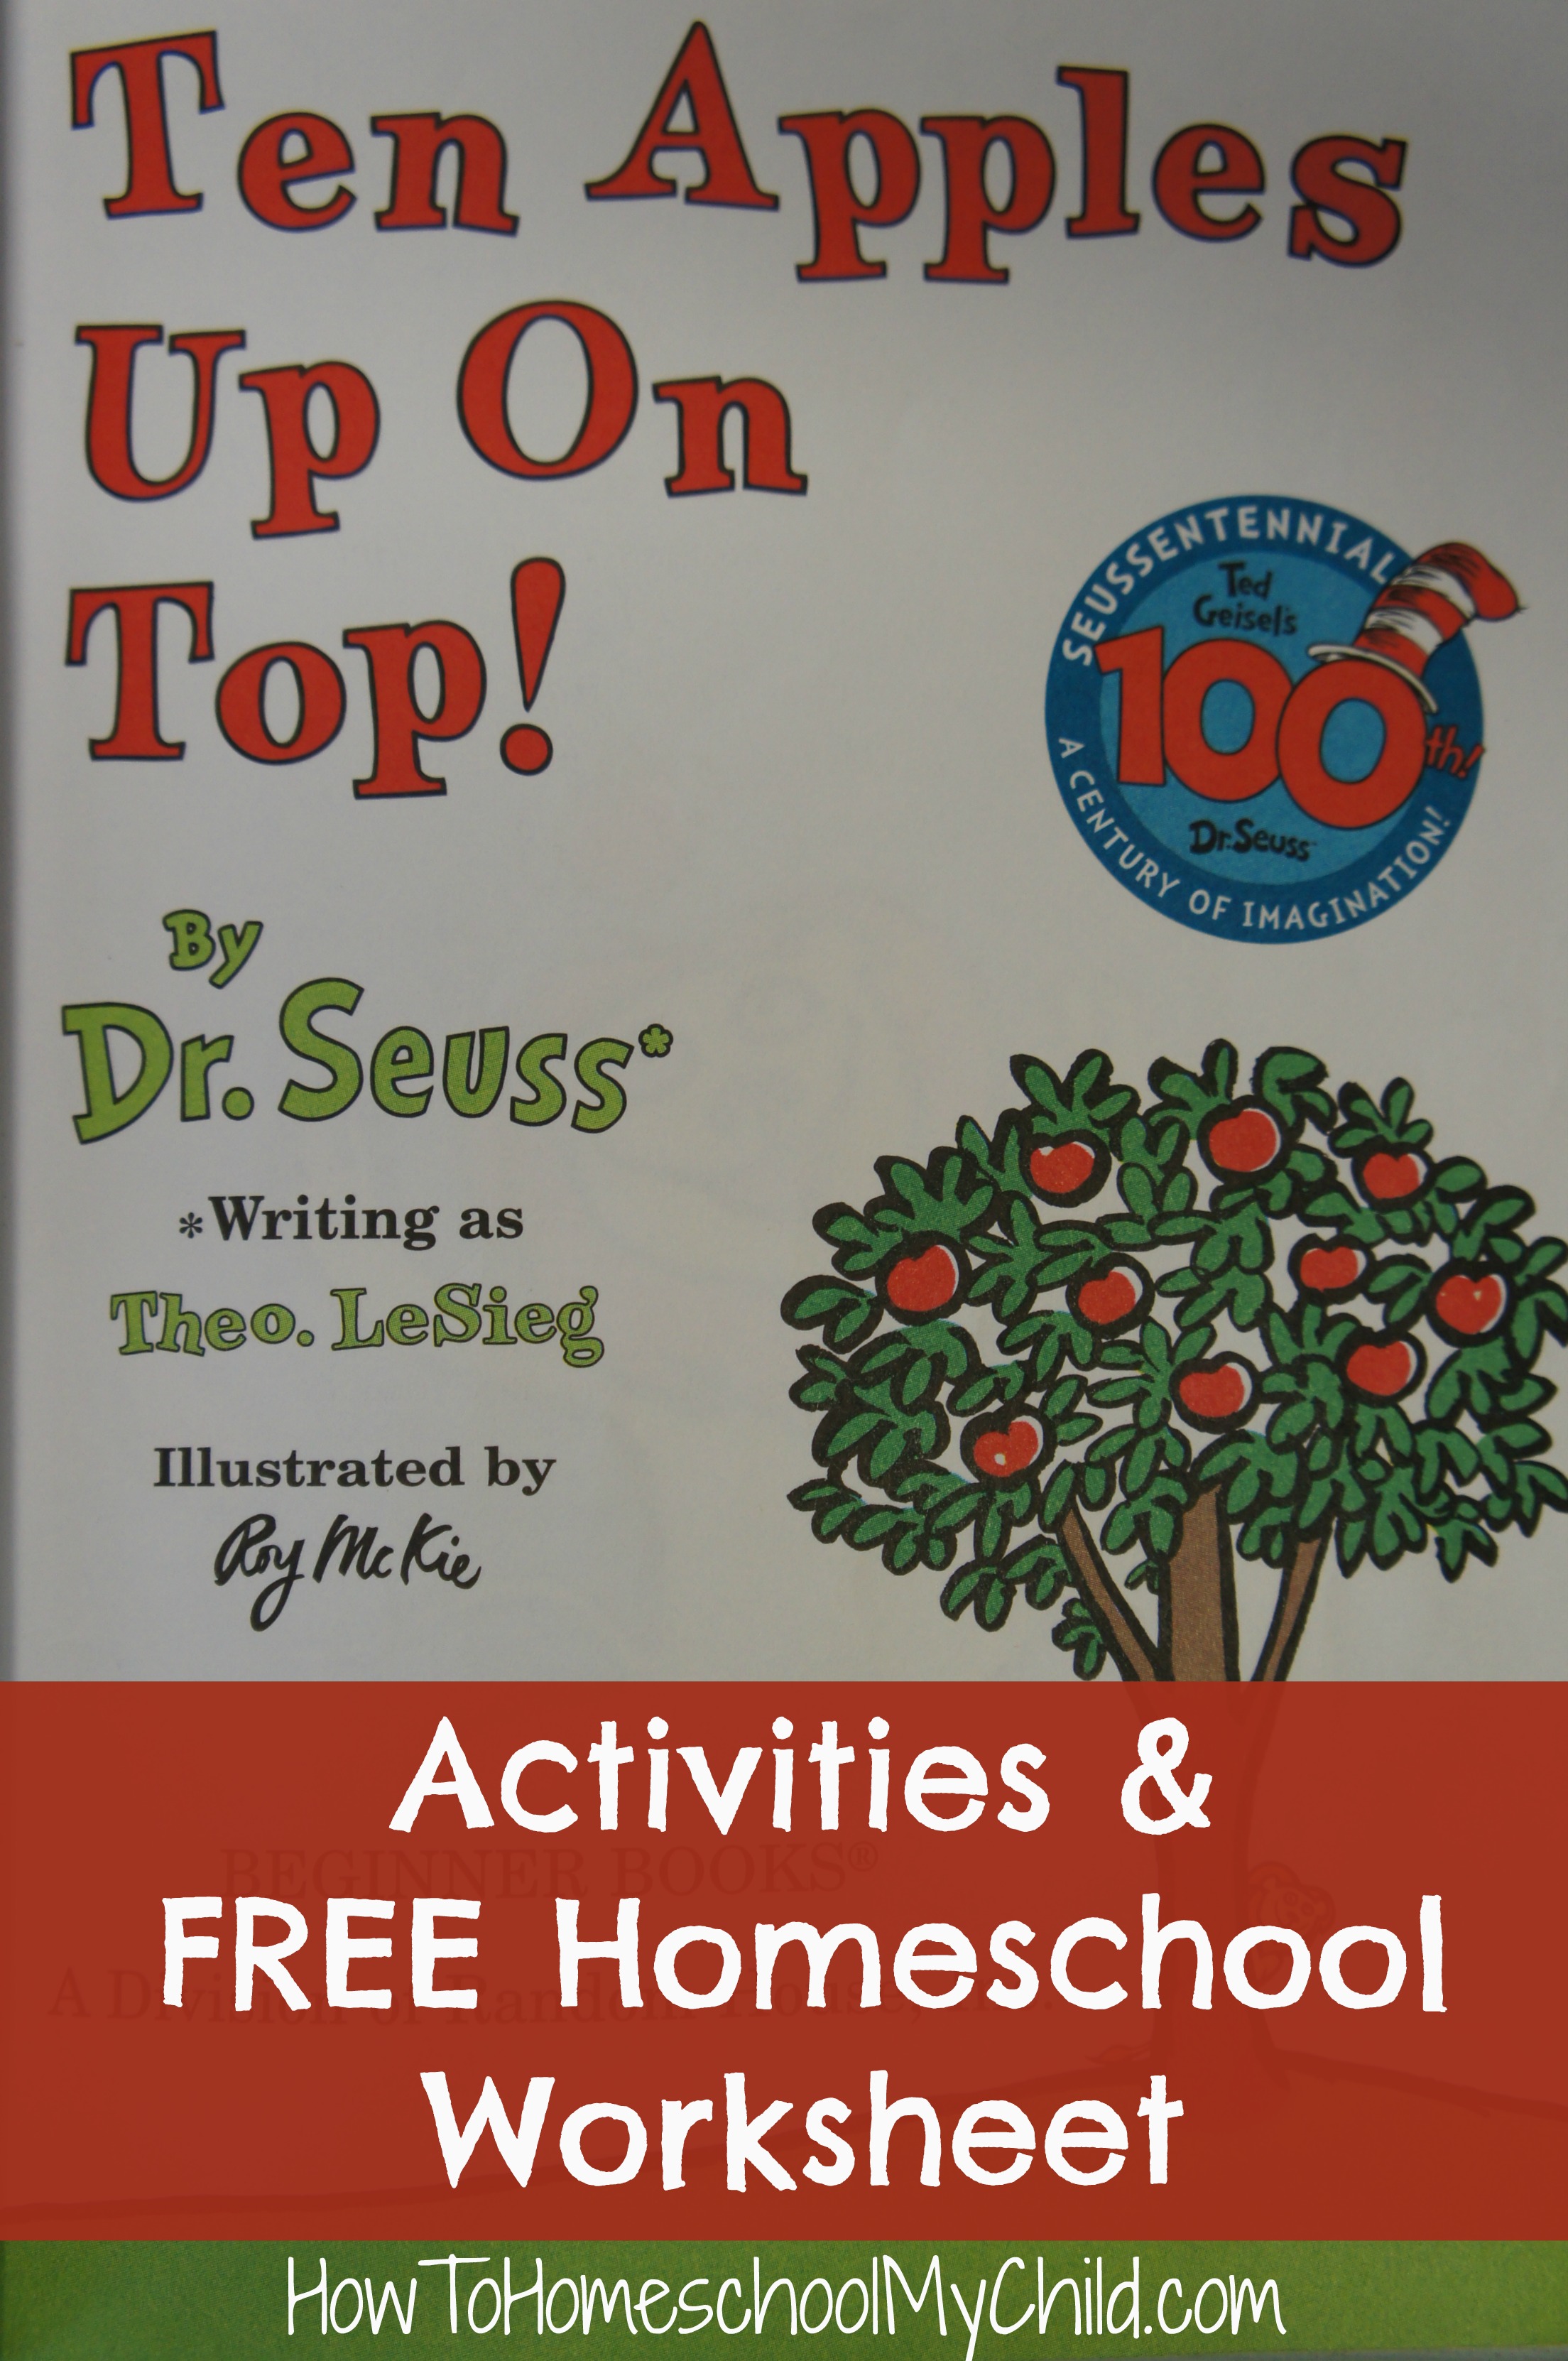 Ten Apples on Top Activities & FREE homeschool worksheet from HowToHomeschoolMyChild.com